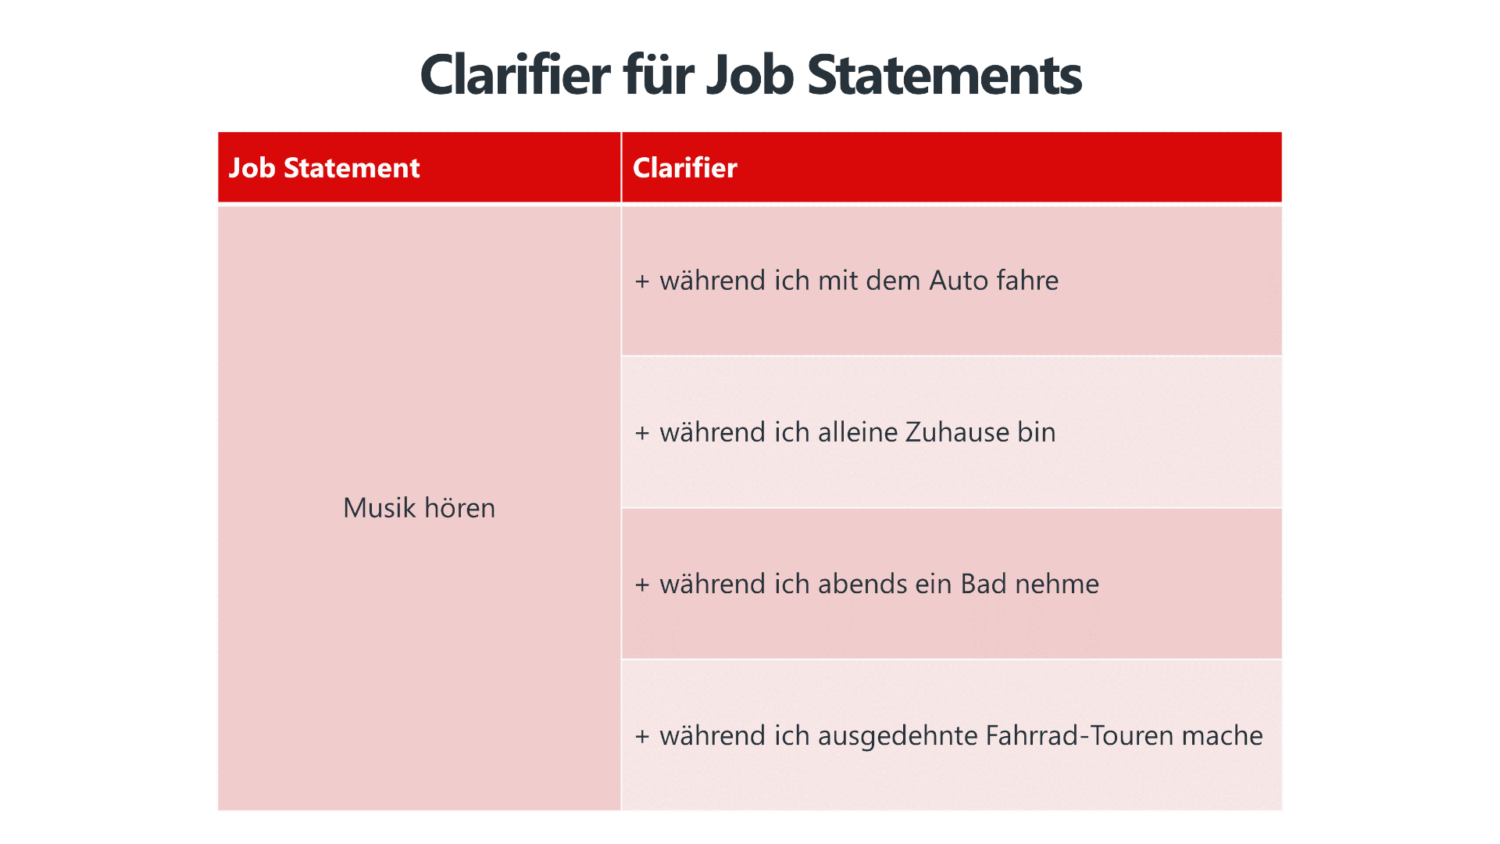 Clarifier für Job Statements